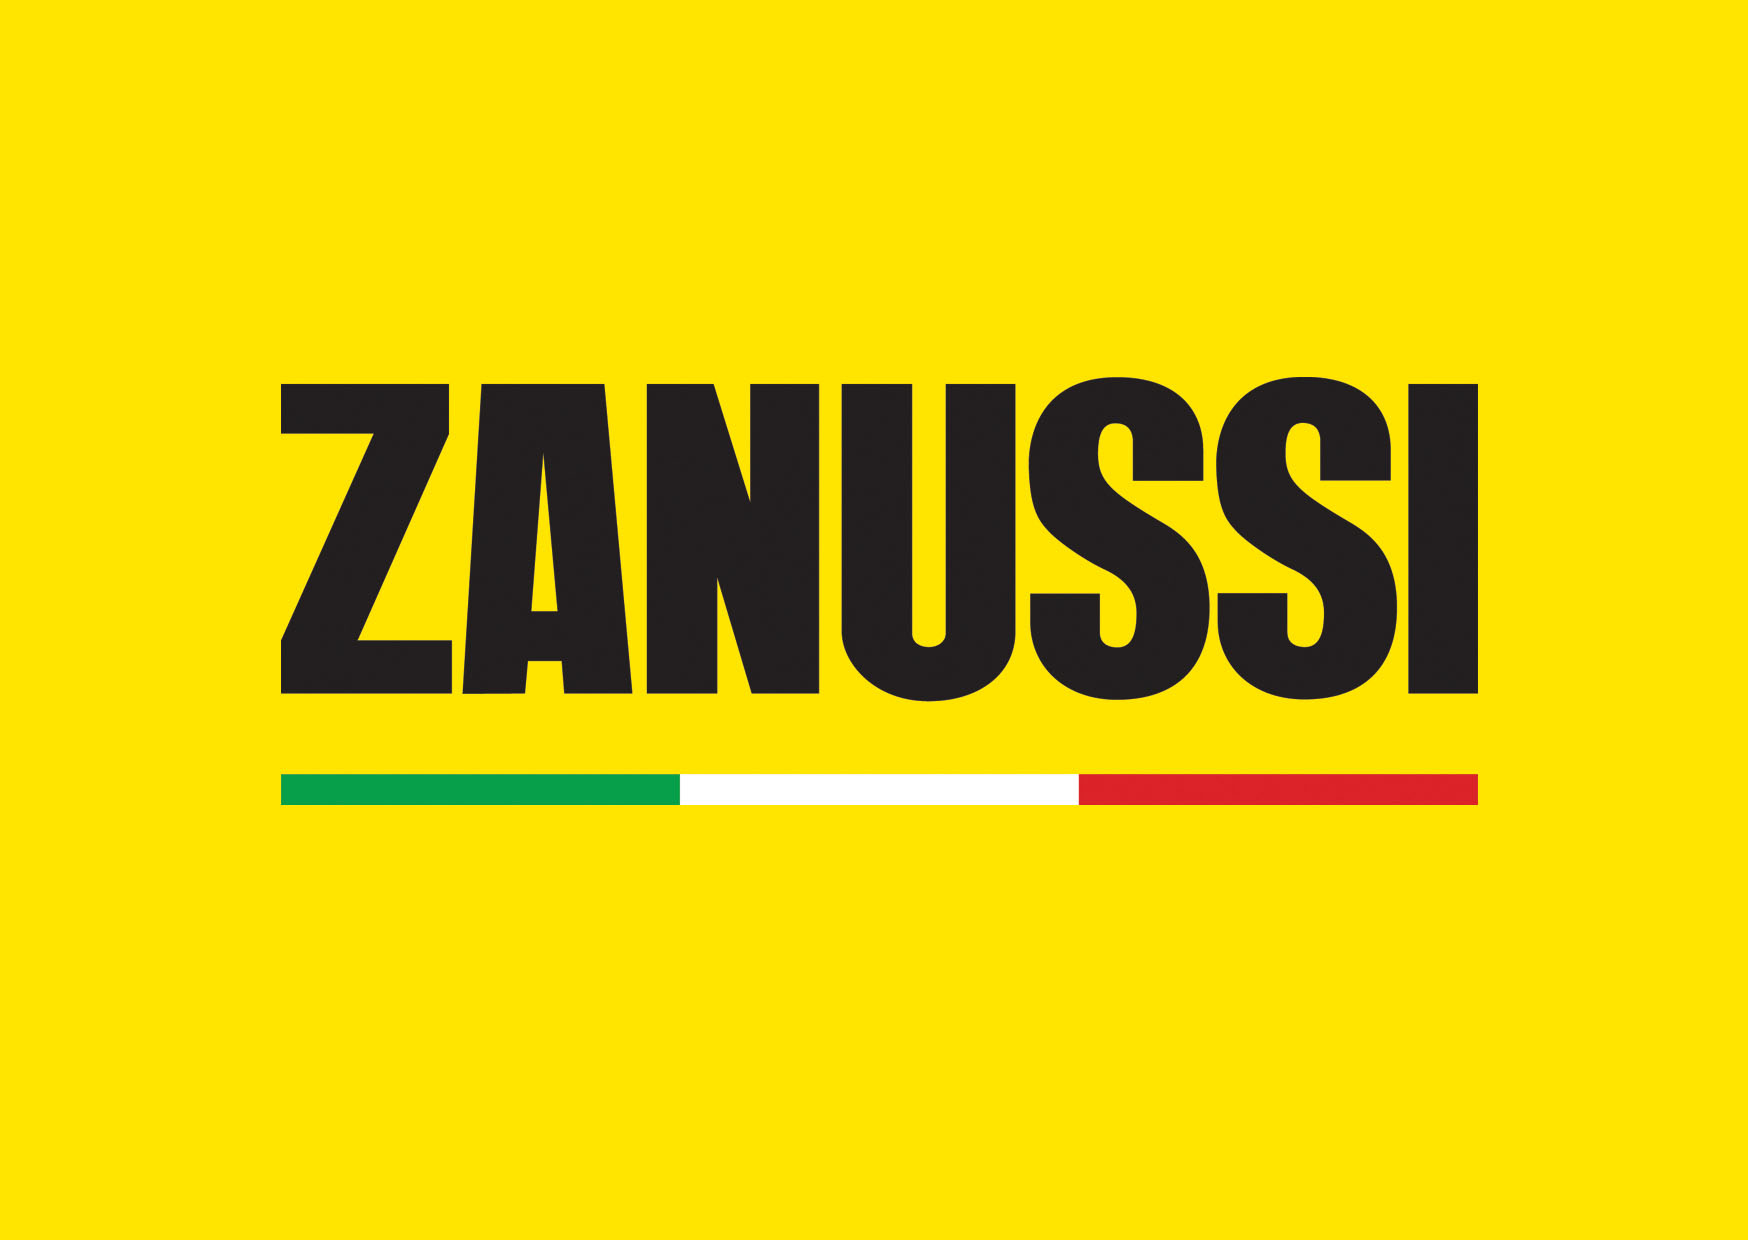 zanussi_logo_flag_yellow-2.jpg